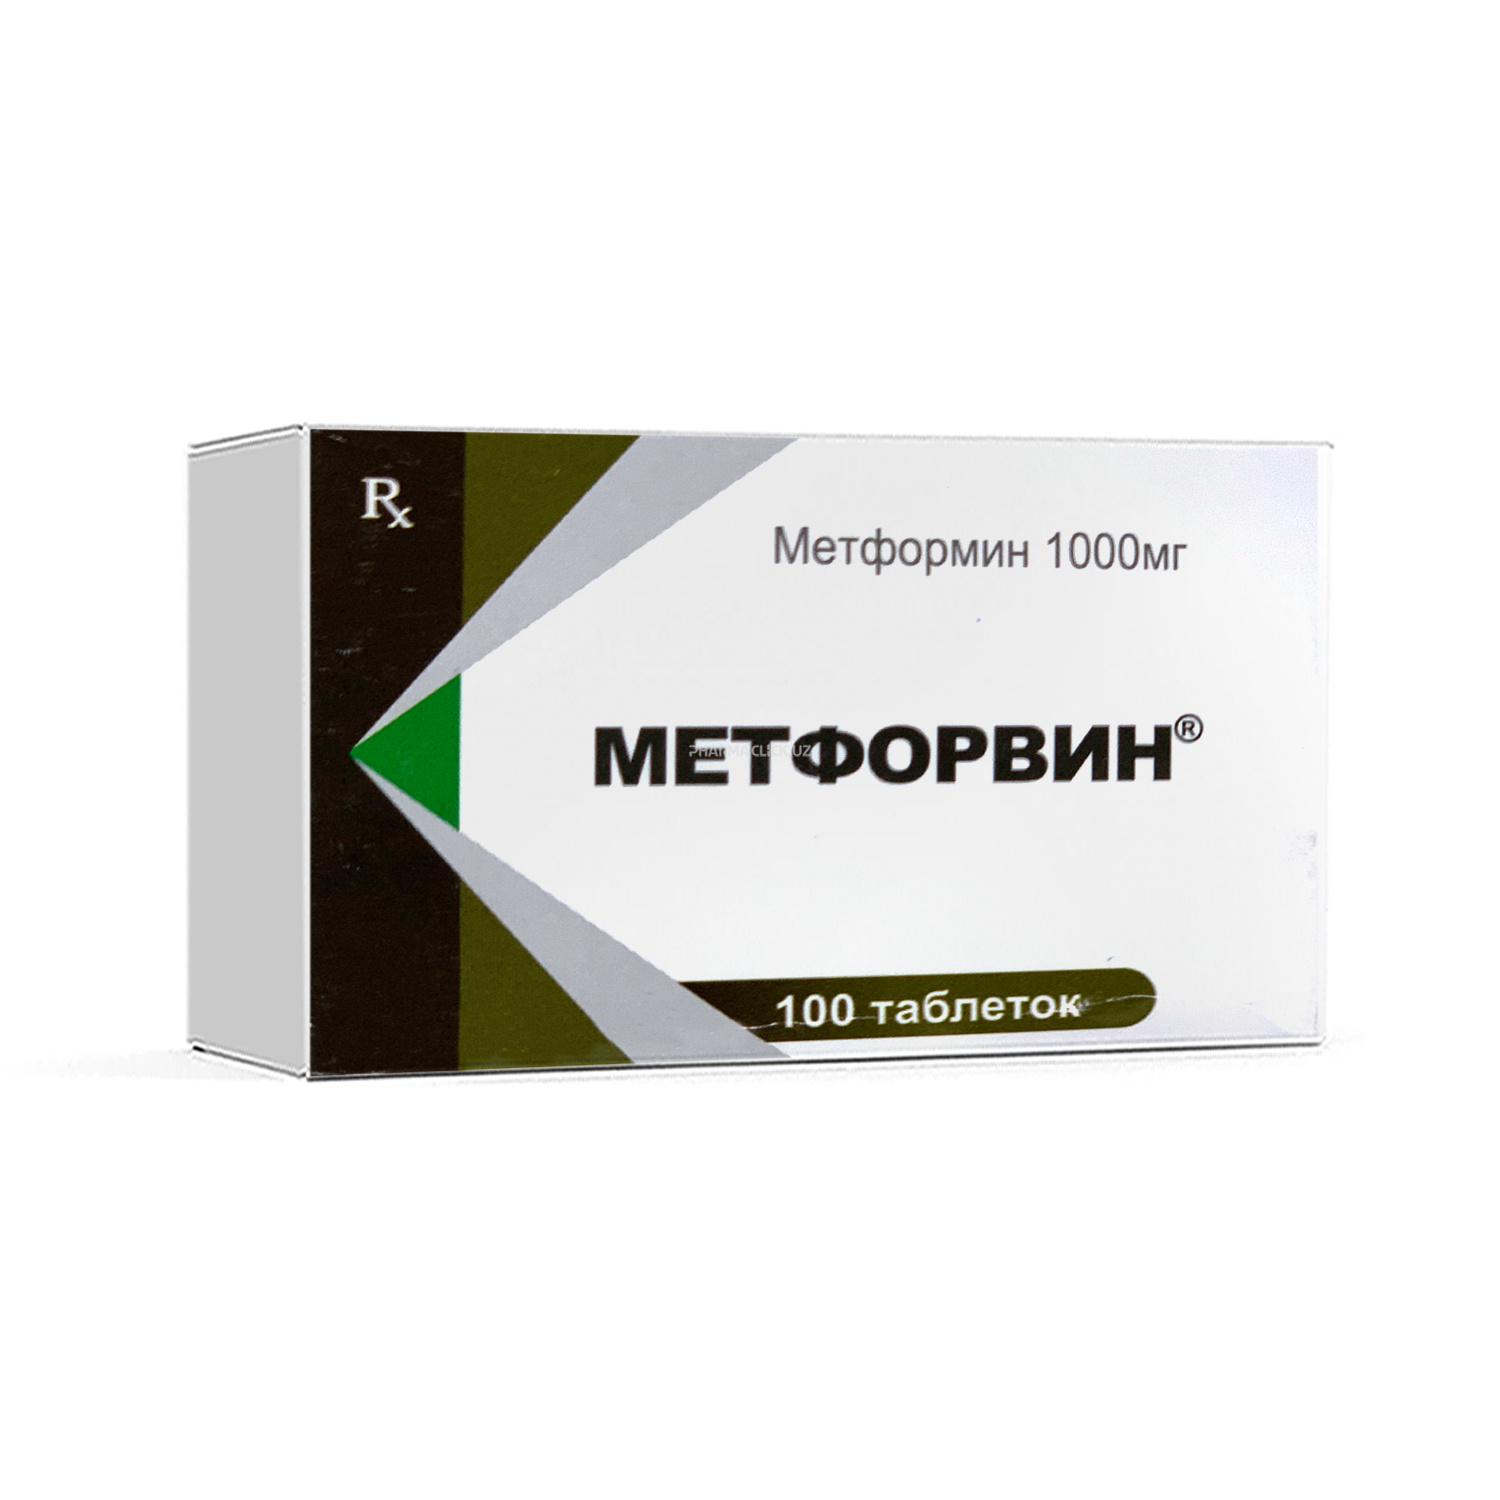 Метфорвин-1000 № 10 x 10 таблетки